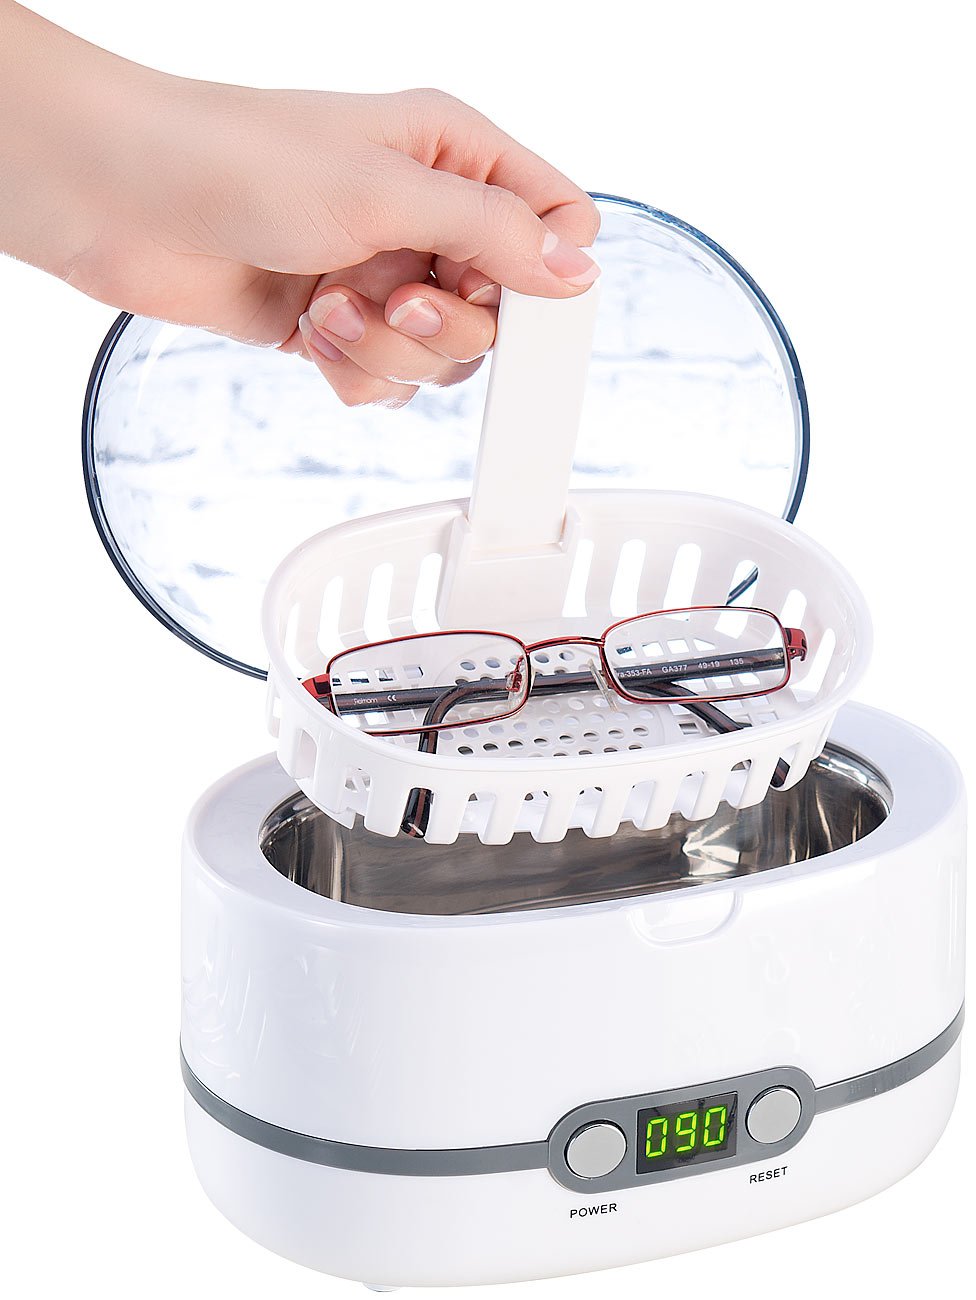 newgen medicals Ultraschall Reinigung: Digital-Ultraschallreiniger, Einlegekorb, für Brillen & Schmuck, 50 W (Ultraschallreinigungsgerät, Ultraschallgerät, Reinigungsgerät Brille)